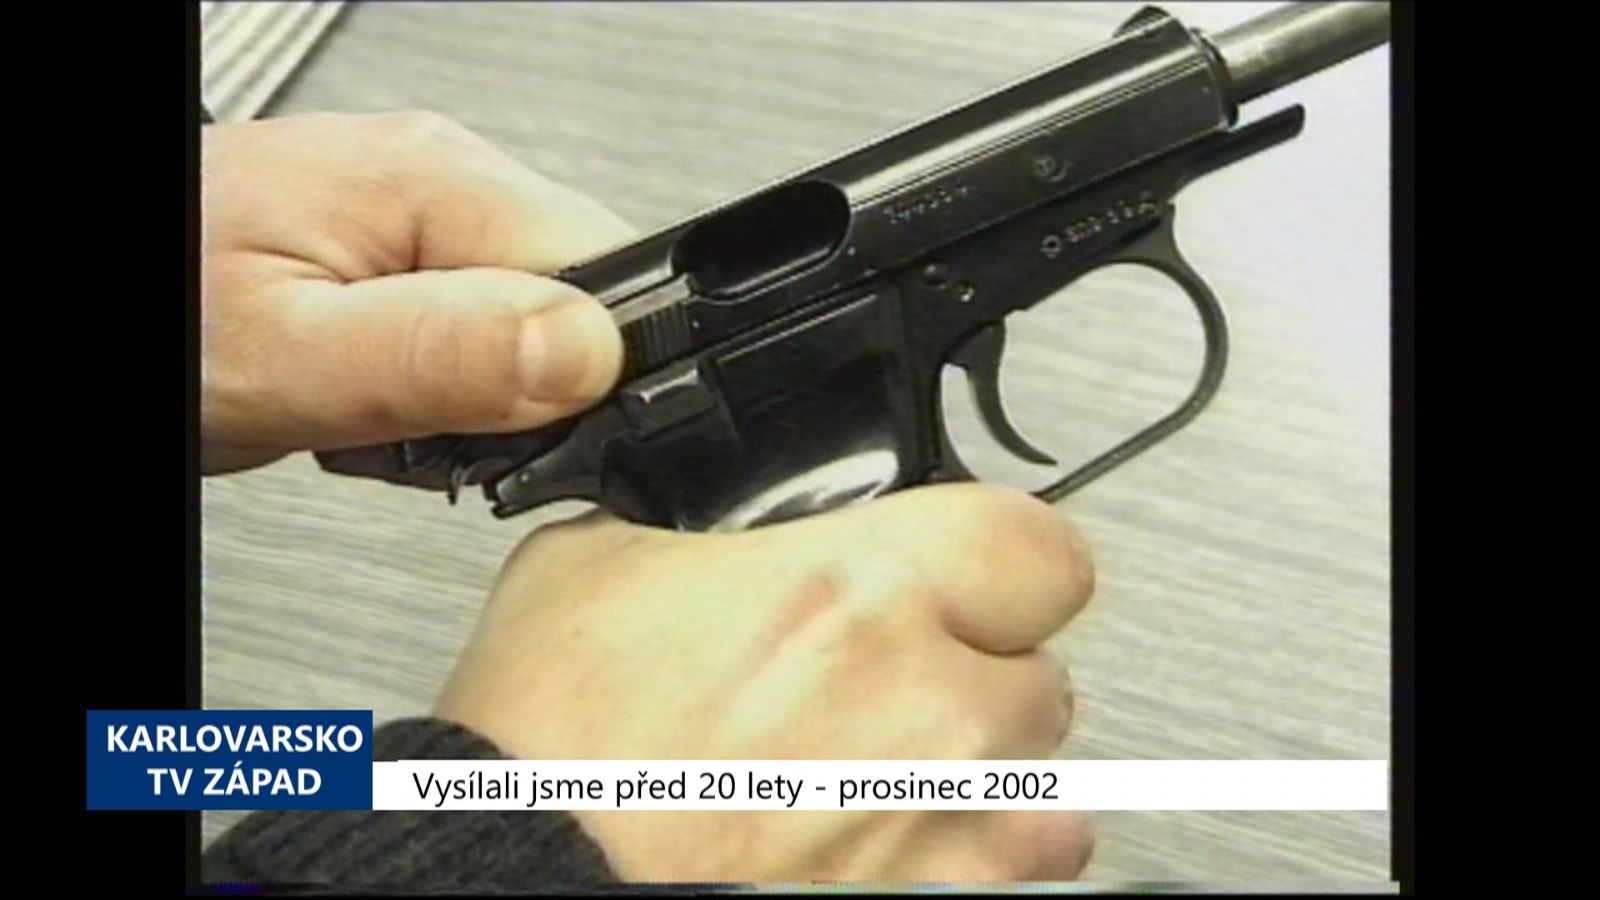 2002 – Region: Nový zákon o zbraních rozšíří kompetence Policie (TV Západ)